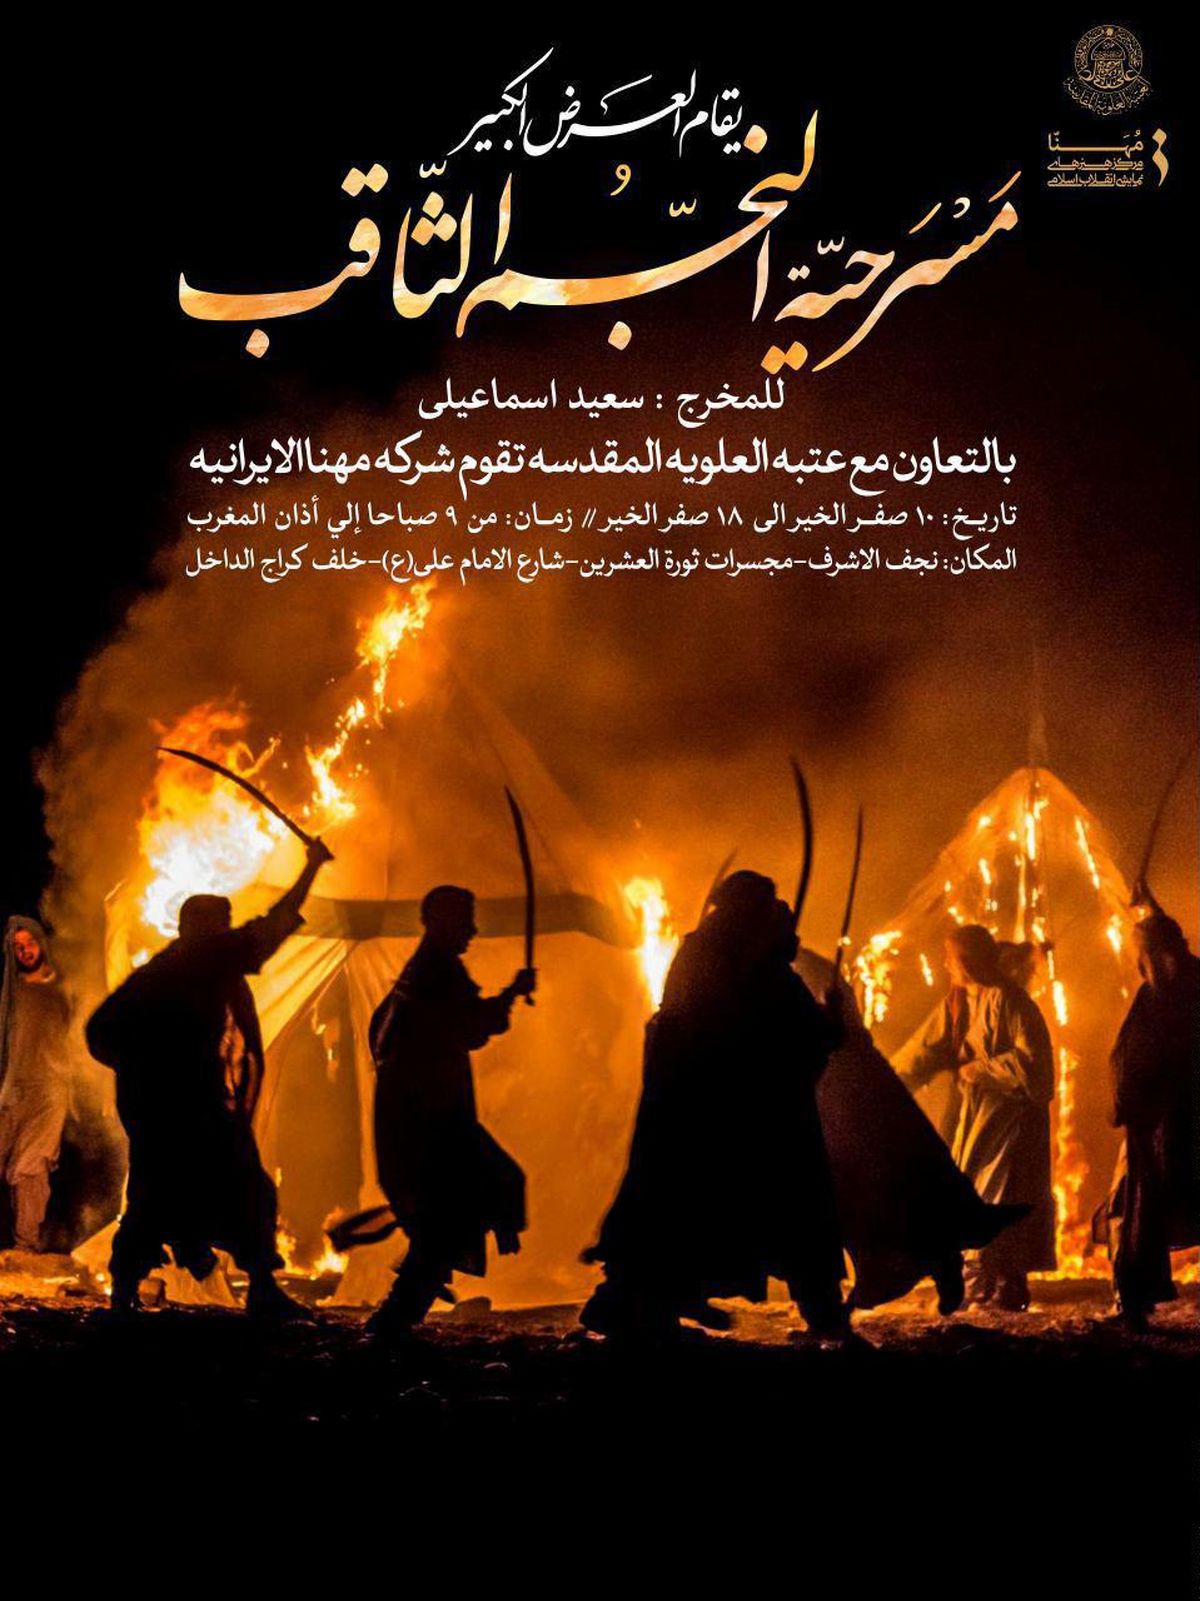 آستان مقدس حضرت علی از مرکز هنرهای نمایشی انقلاب اسلامی تقدیر کرد